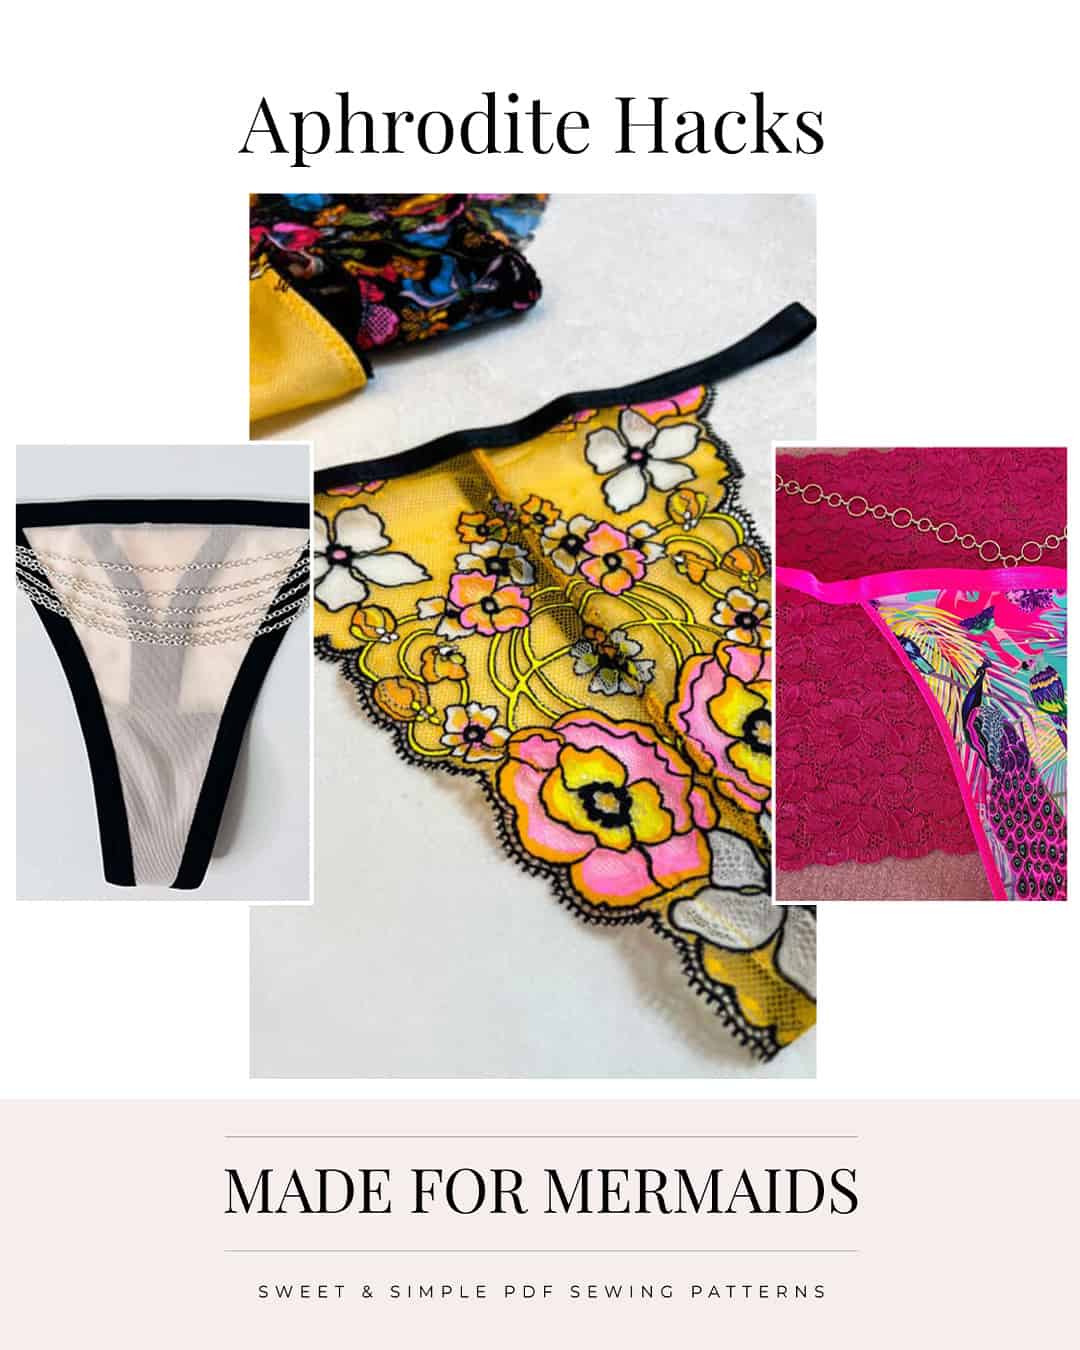 Hand Knitted Underwear Panties Swimming Trunks Bikini Thong